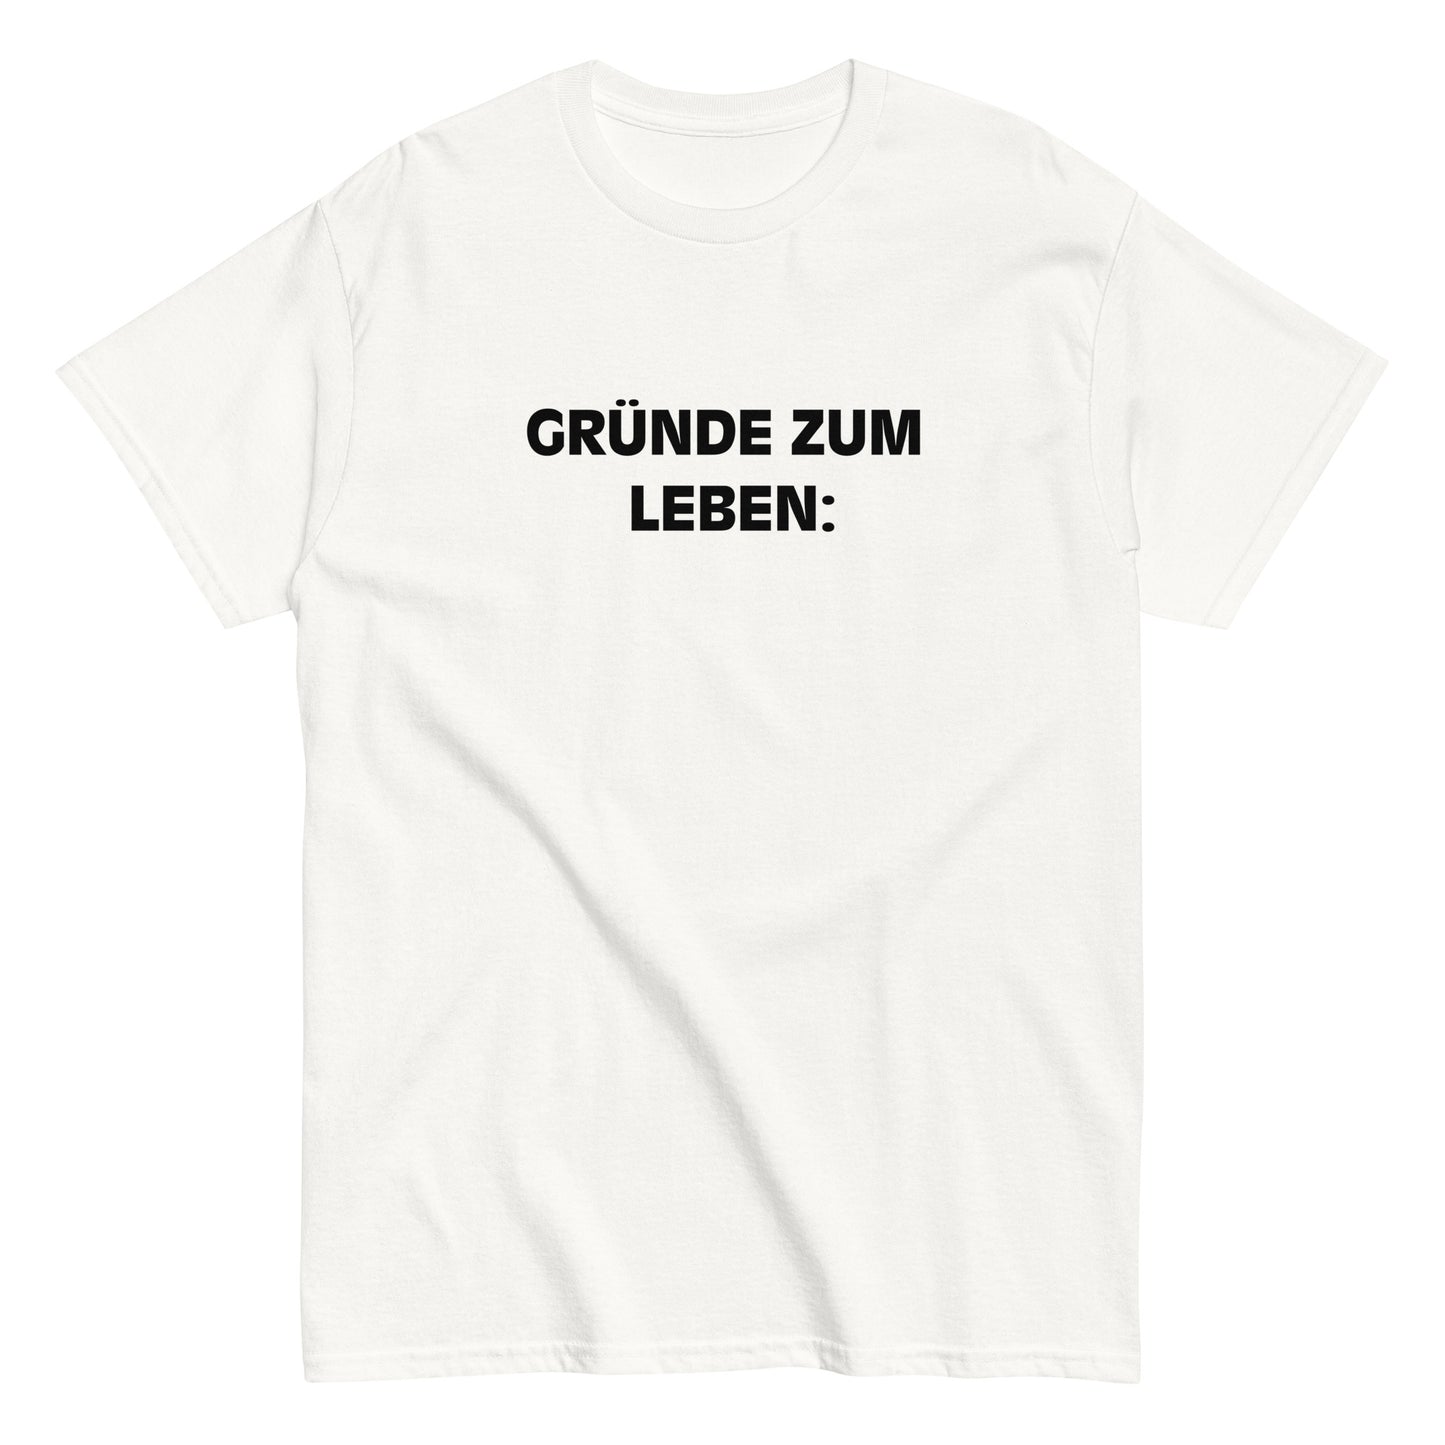 GRÜNDE ZUM LEBEN: T-Shirt